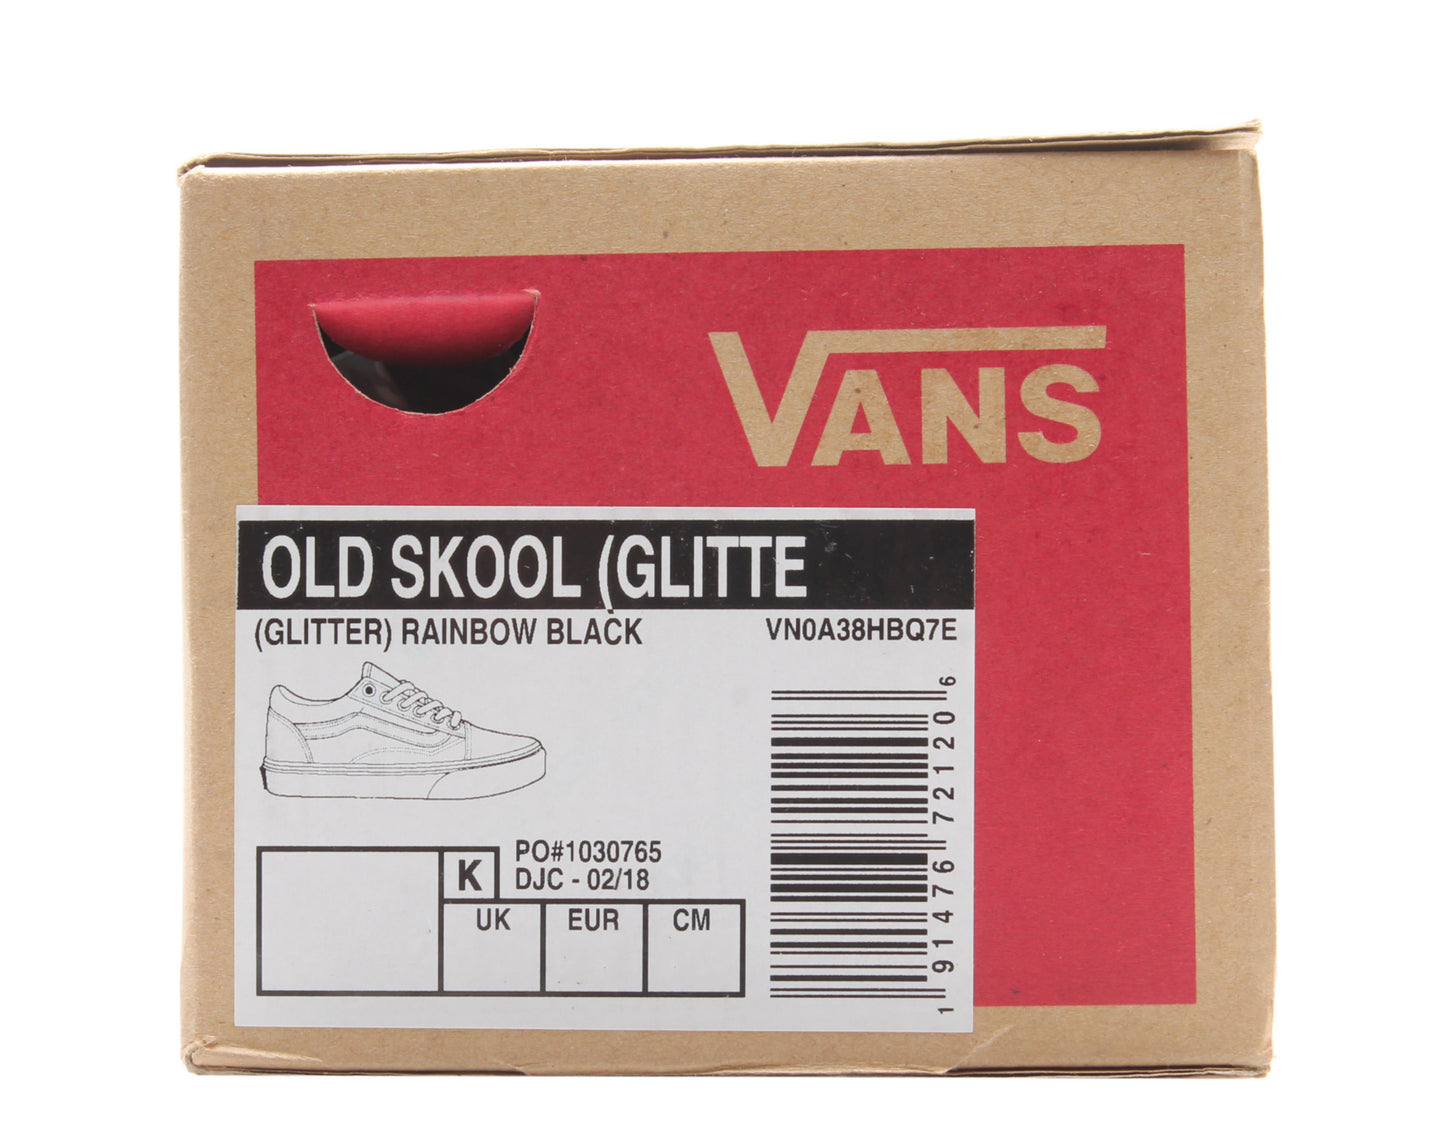 Vans Old Skool Glitter Low Top Sneakers